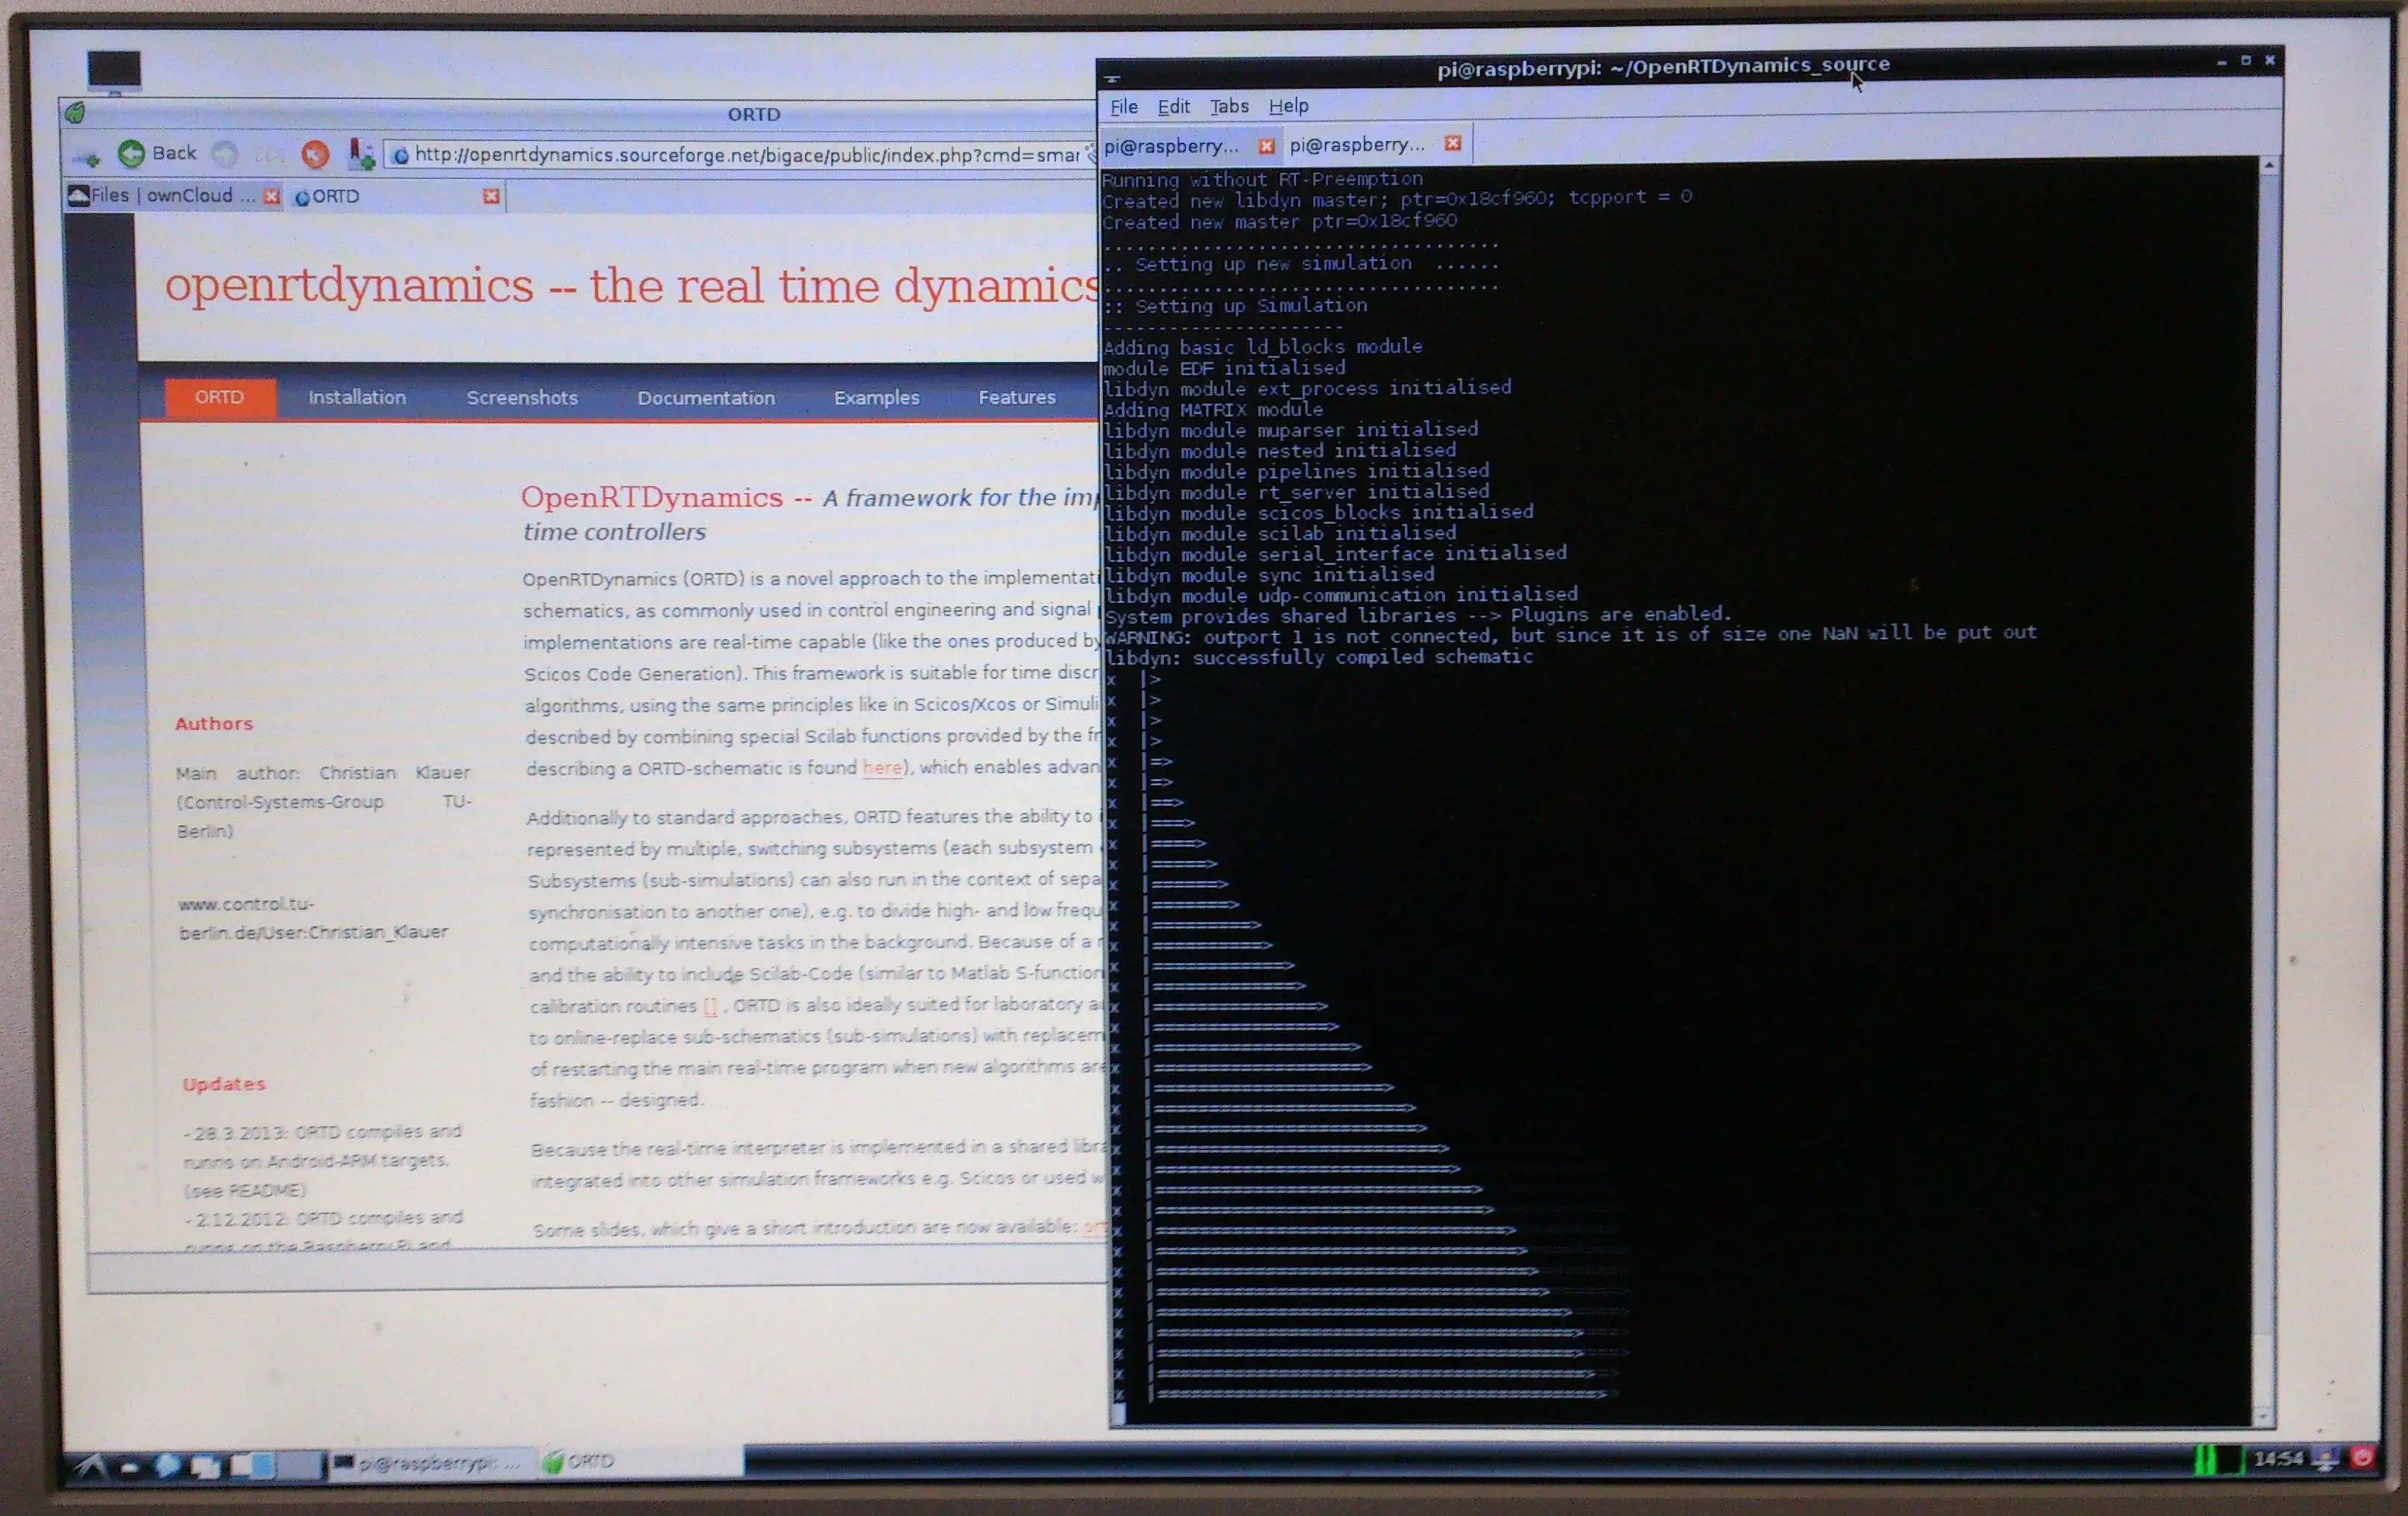 ابزار وب یا برنامه وب OpenRTDynamics را برای اجرا در لینوکس به صورت آنلاین دانلود کنید